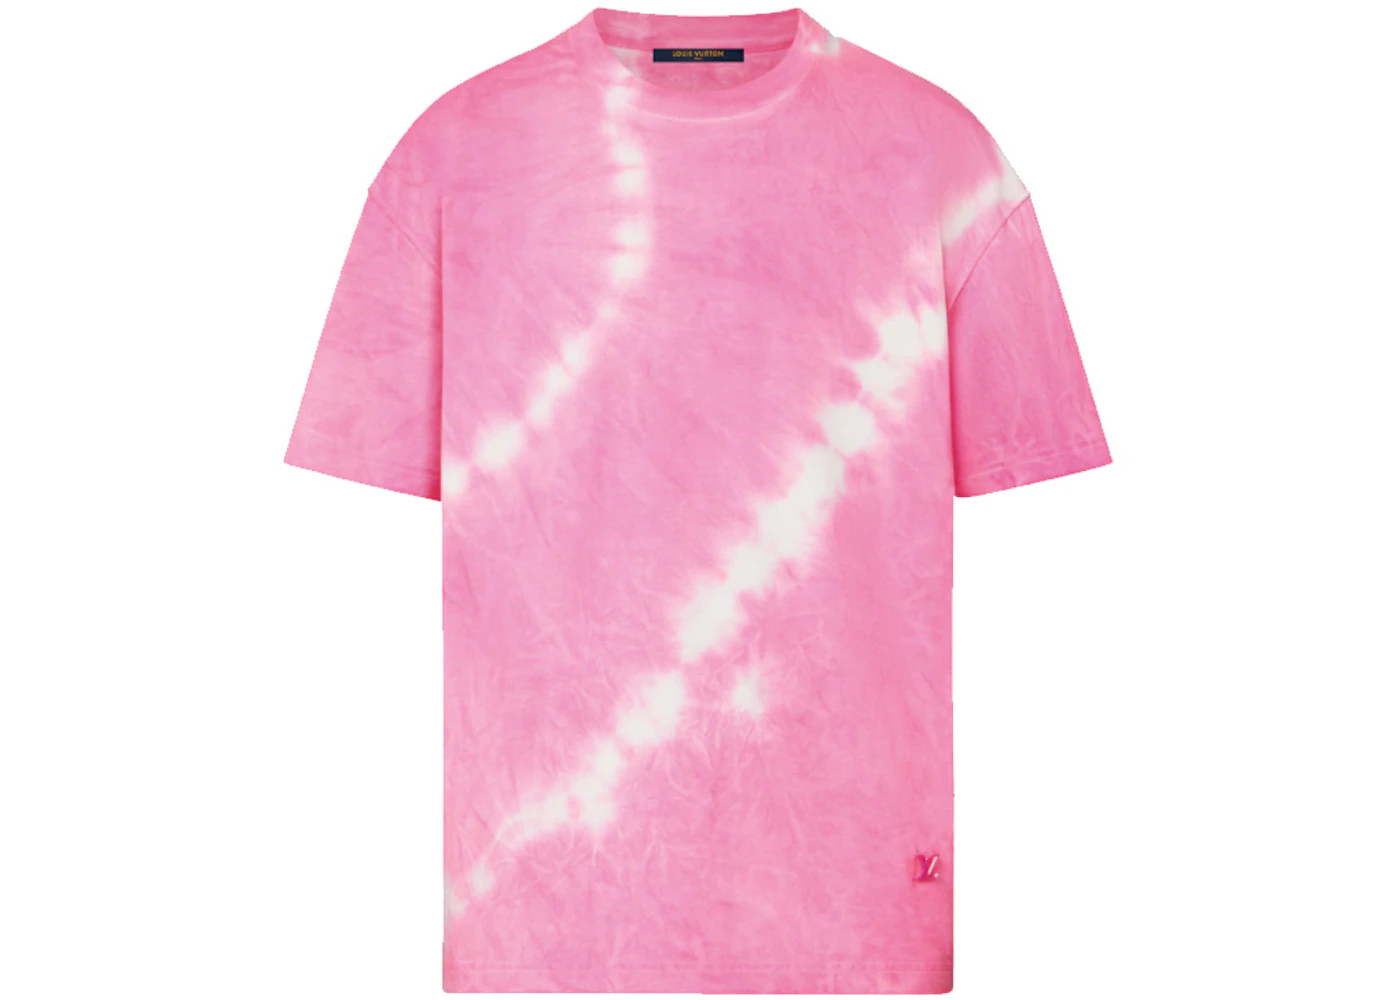 Louis Vuitton Tie&Dye T-shirt with LV Signature Acid Pink Men's